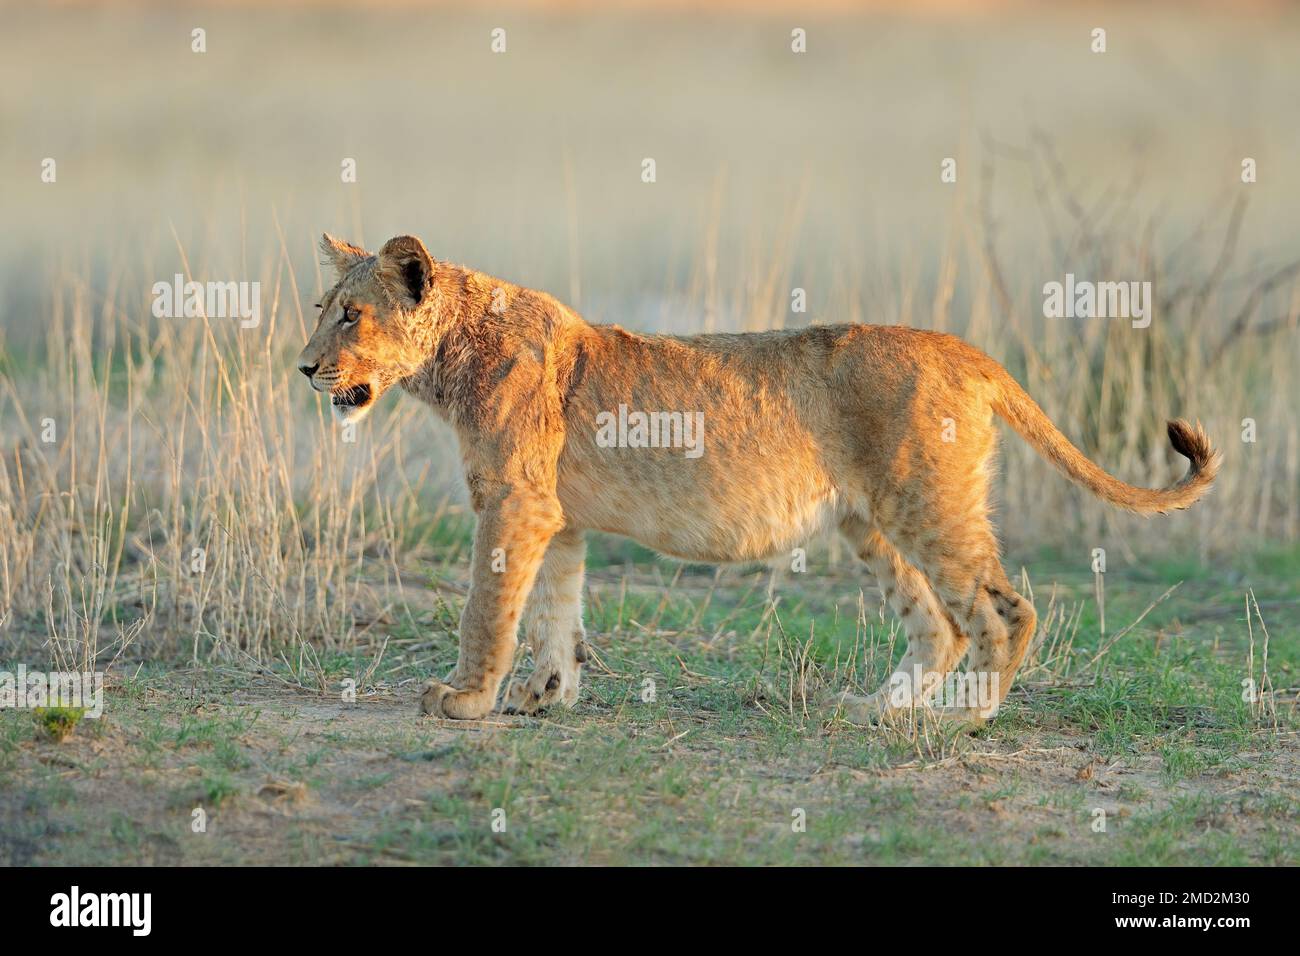 Allerta cucciolo di leone africano (Panthera leo), deserto di Kalahari, Sudafrica Foto Stock